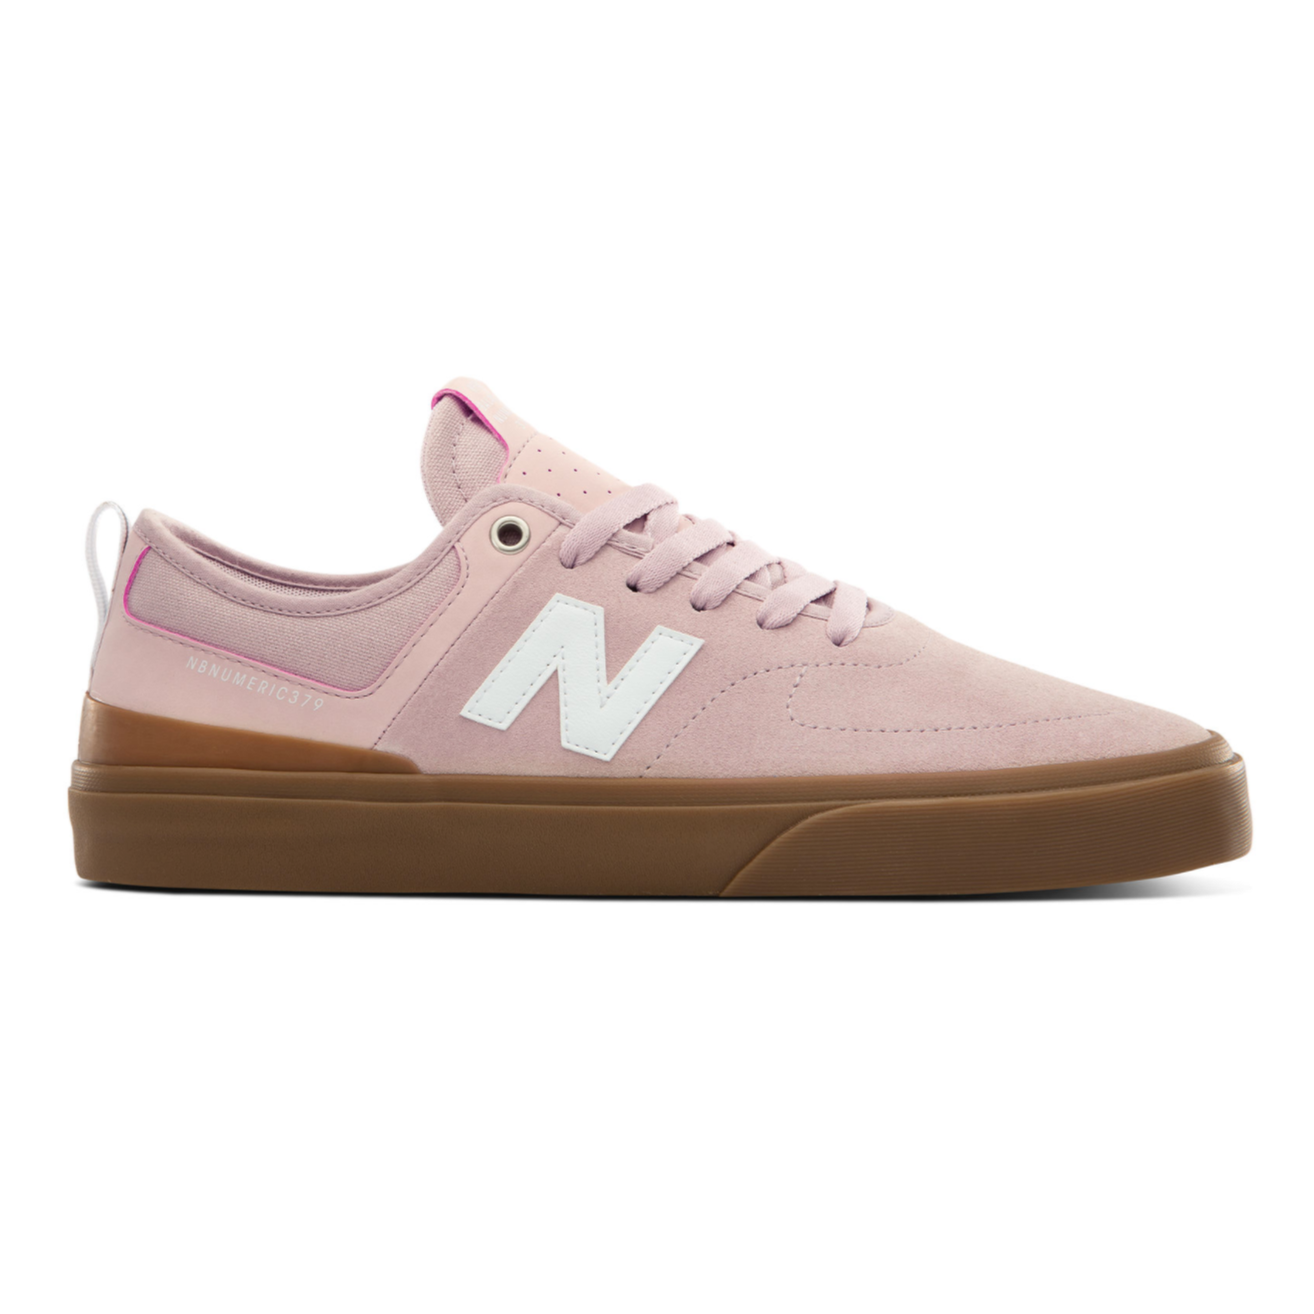 New Balance Numeric Numeric 379 (Pink/Gum) Men's Shoes Skate Shoes ...